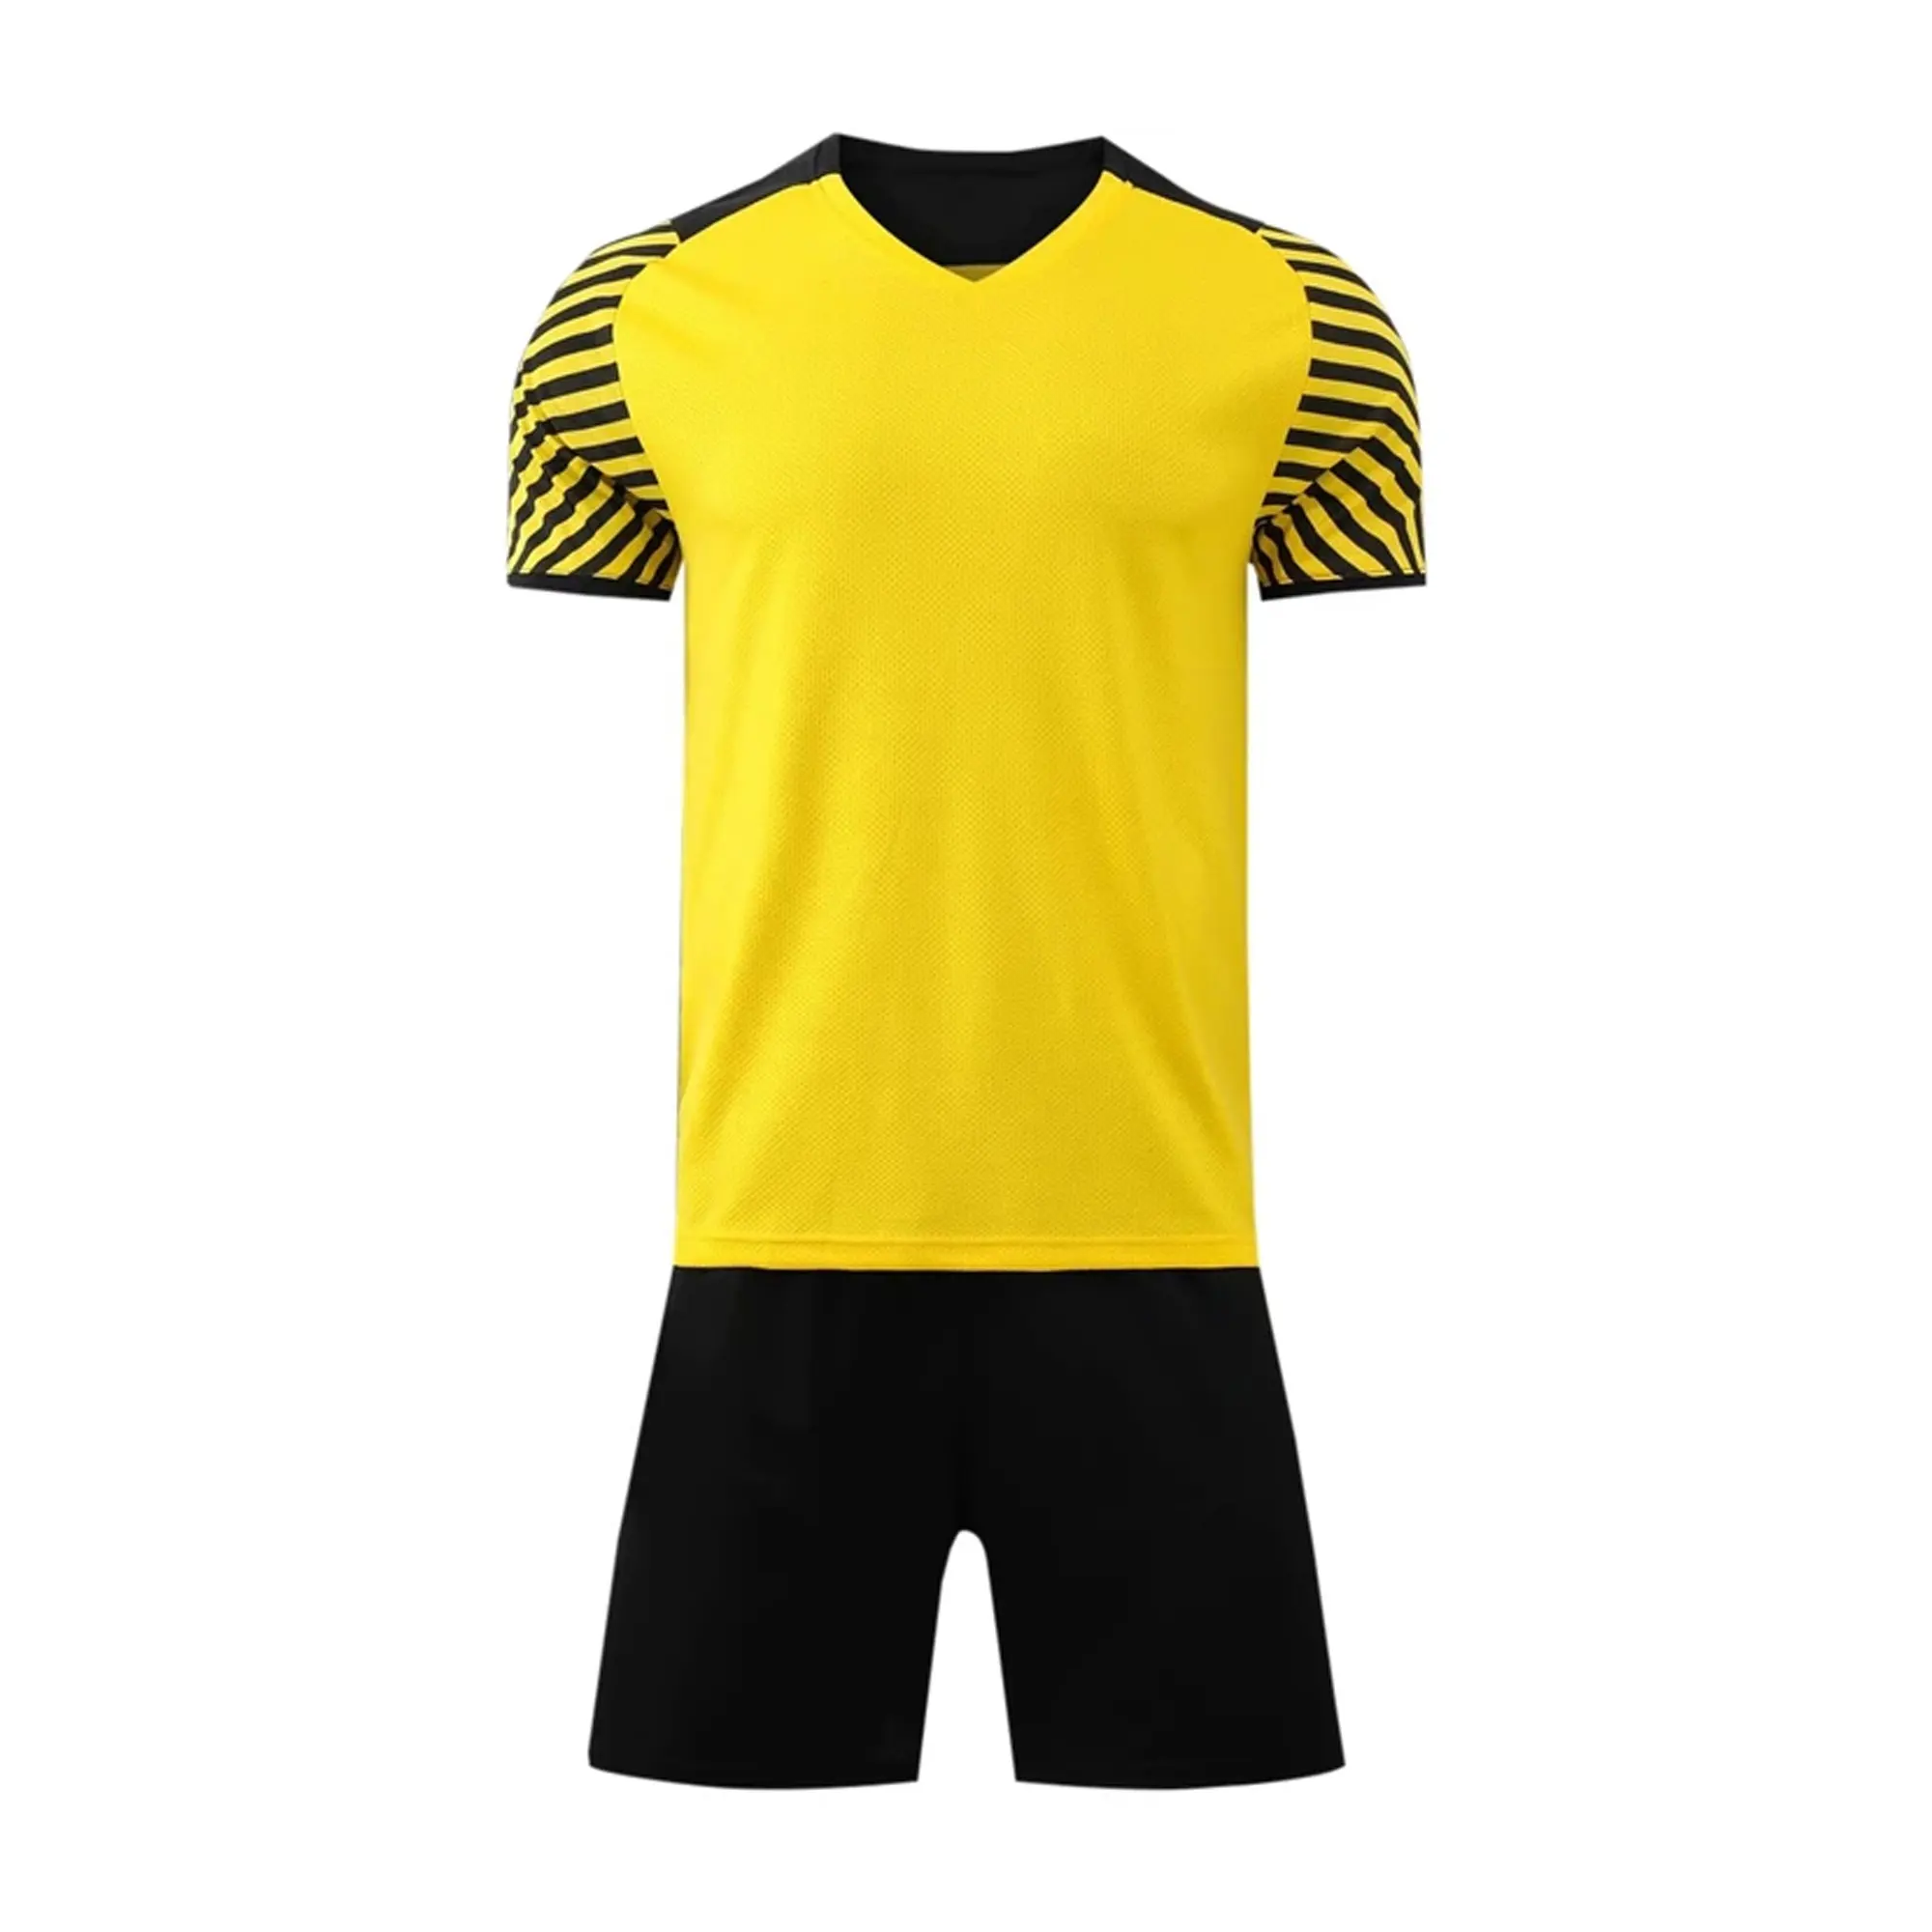 Özel futbol formaları tam süblimasyon baskı futbol forması kulübü takımı futbol forması üniforma takım elbise